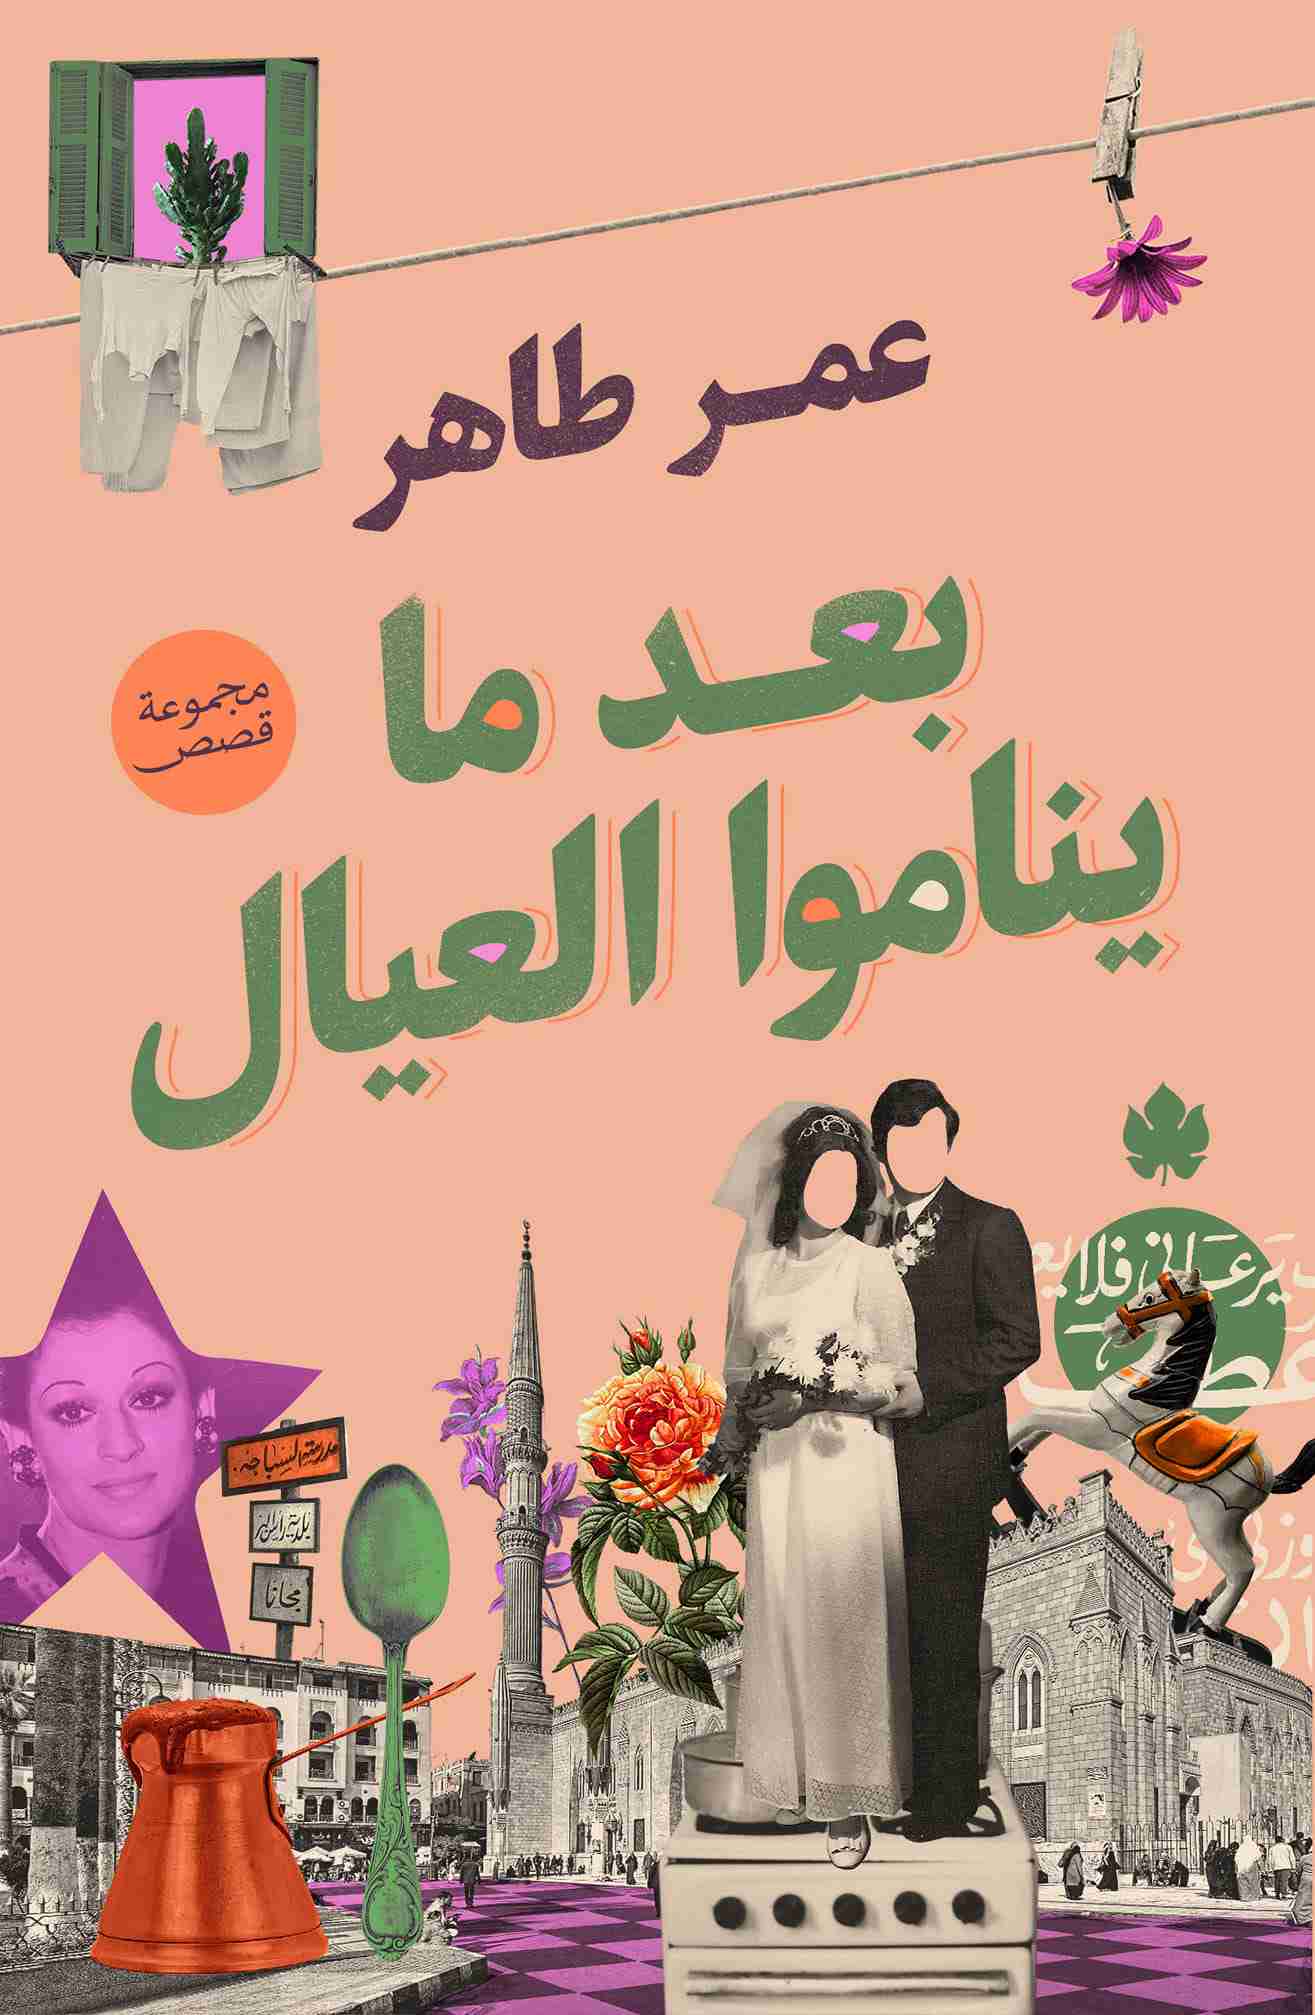 كتاب بعد ما ينامو العيال لـ عمر طاهر